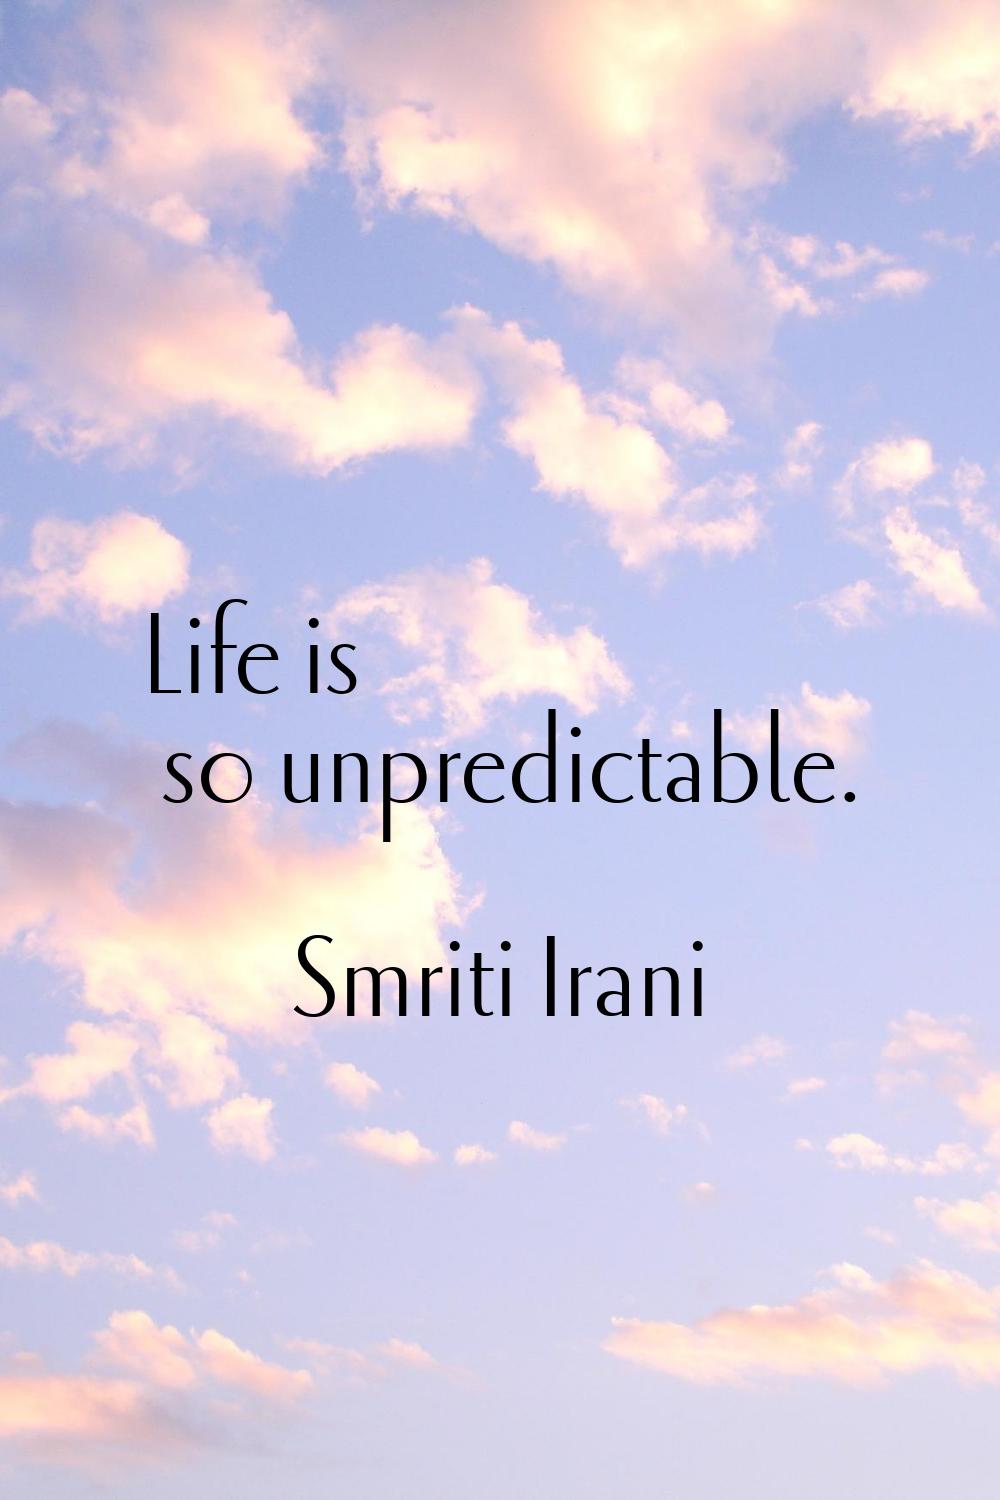 Life is so unpredictable.